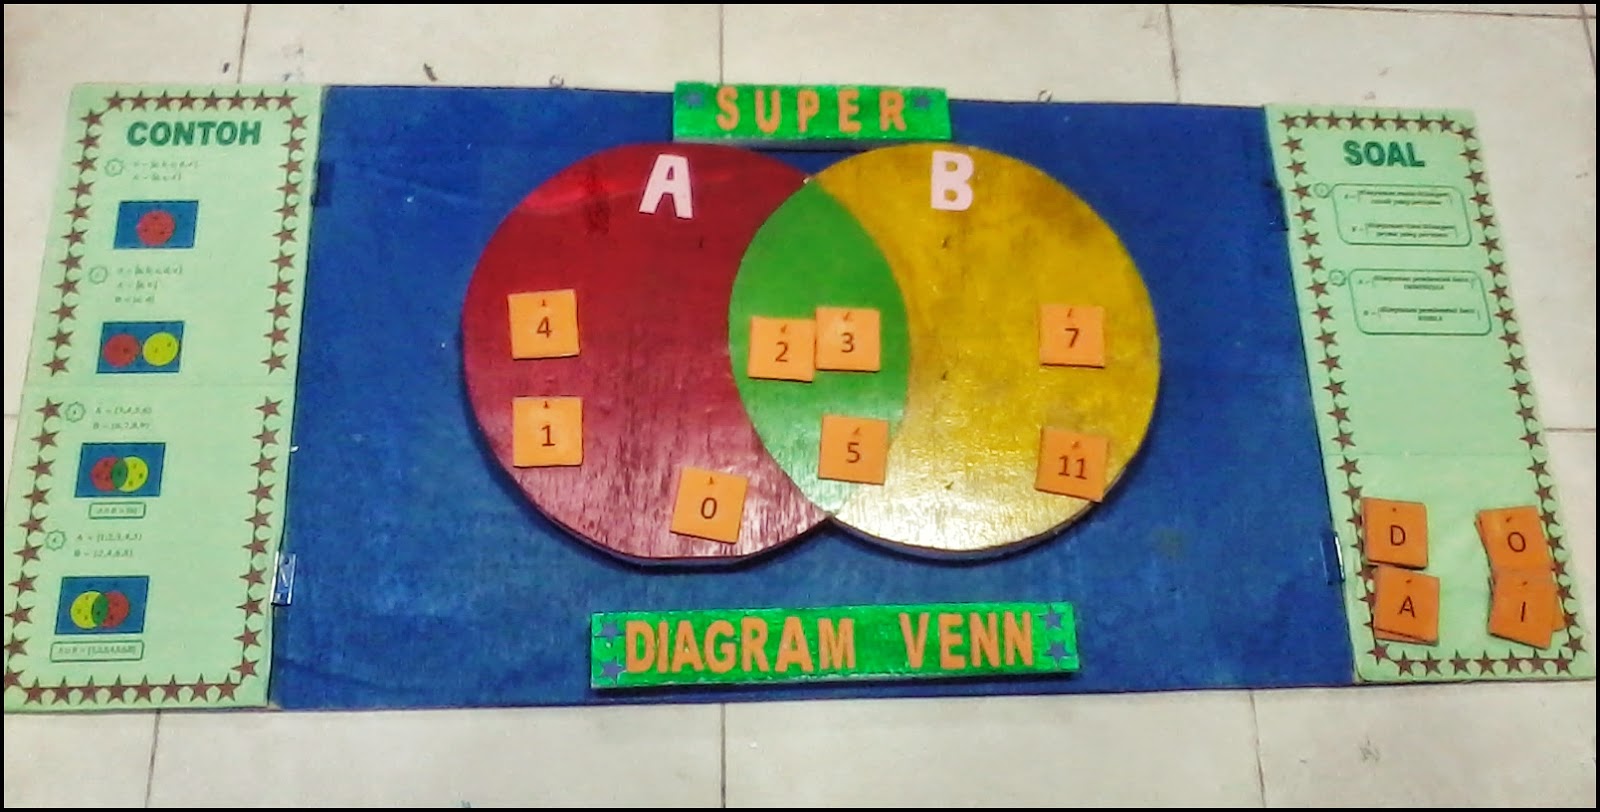 Media Pembelajaran Matematika "Super Diagram Venn 